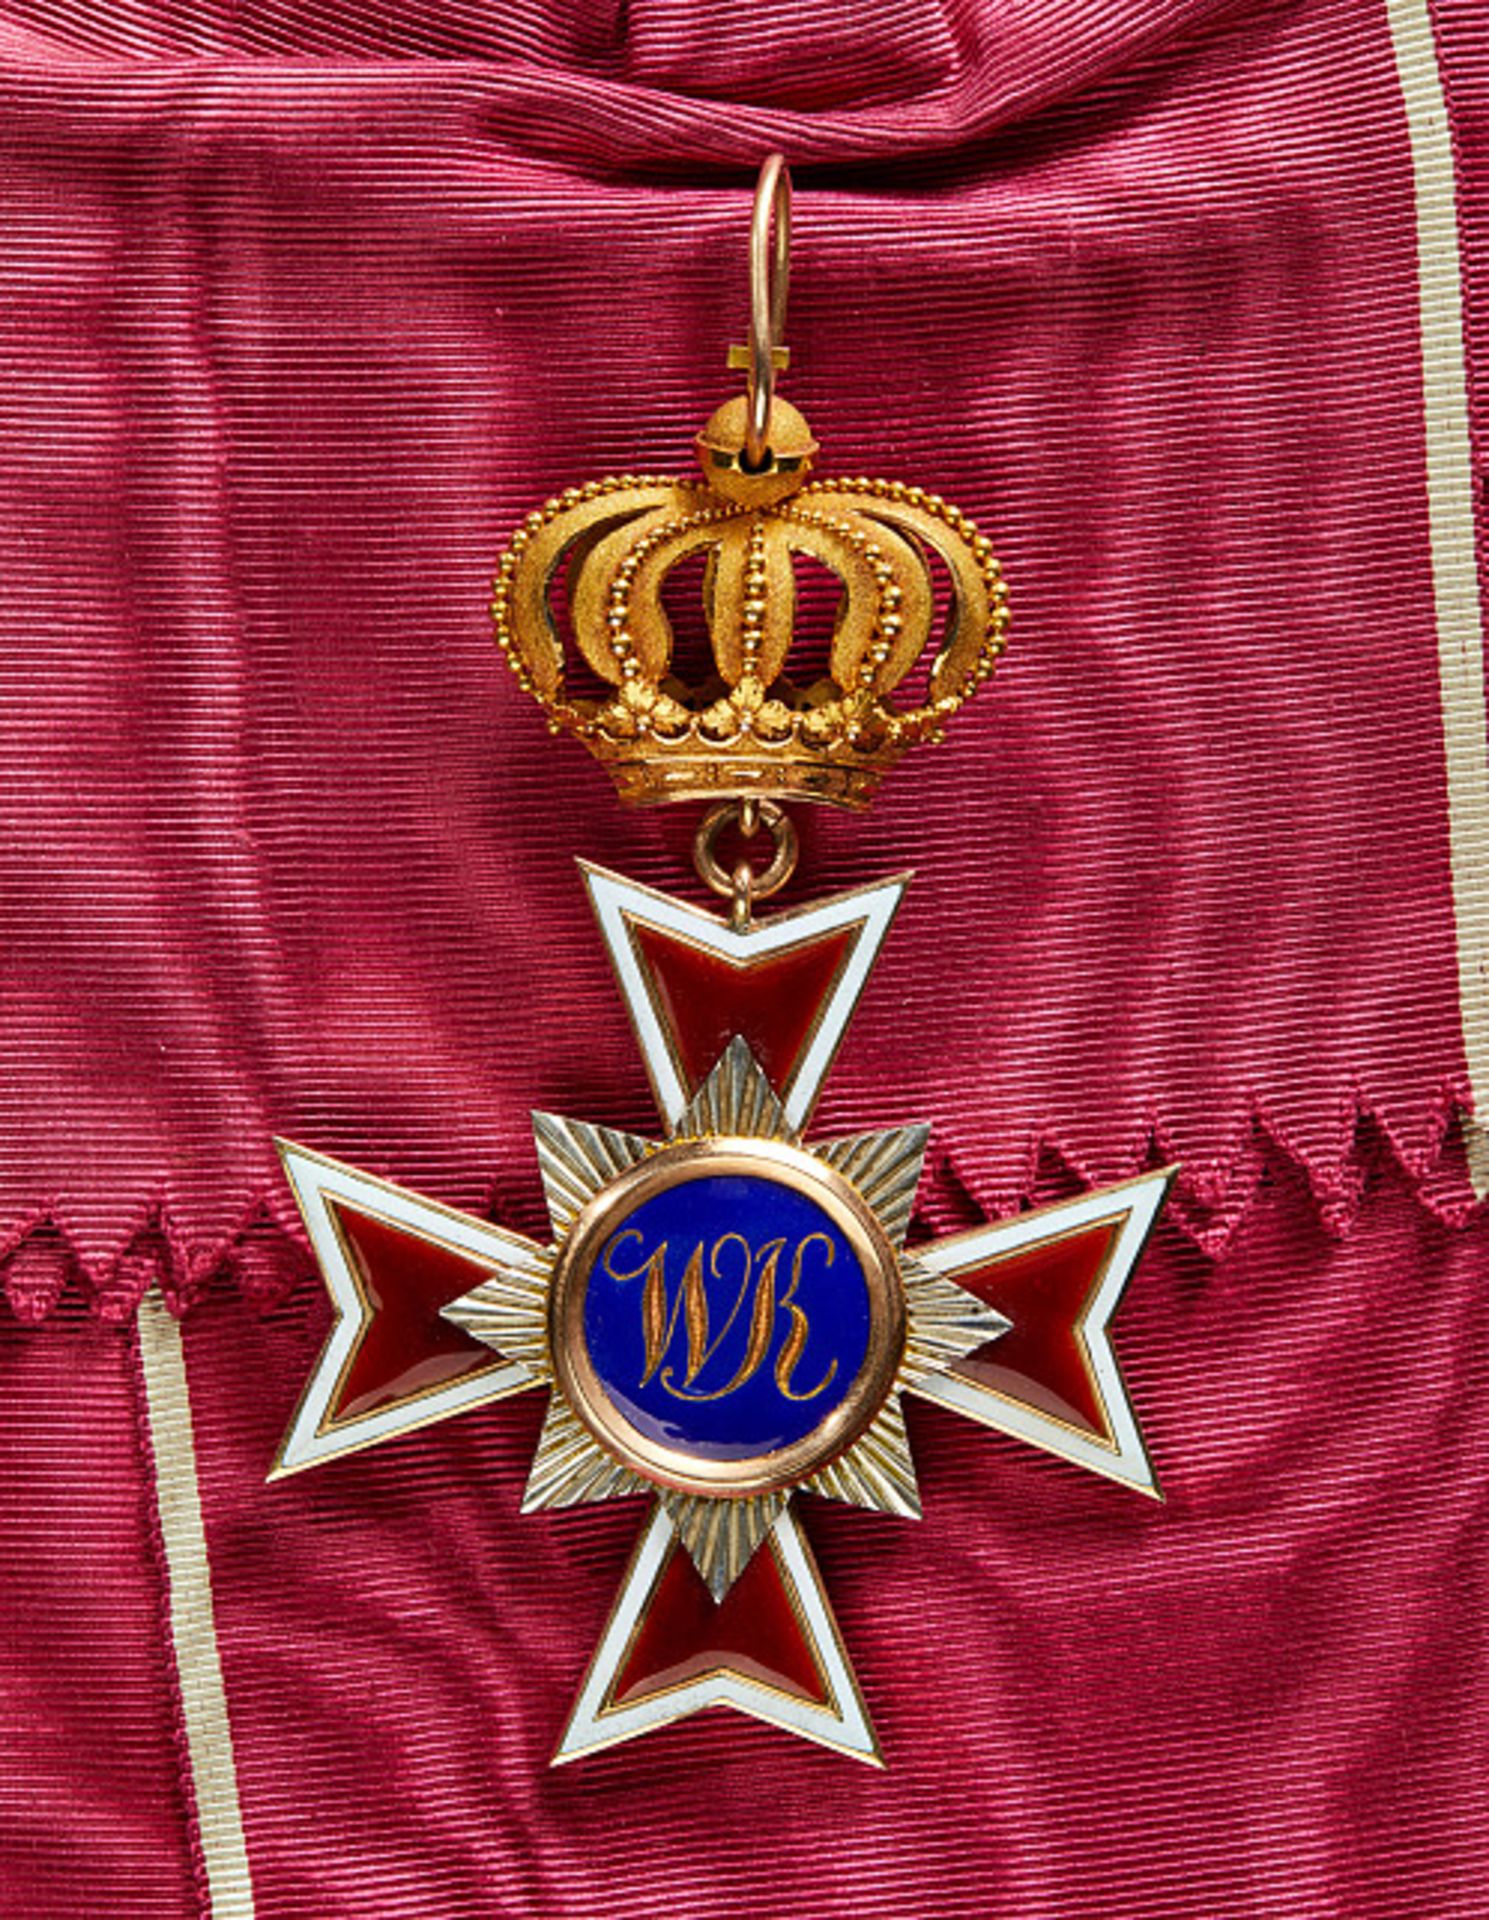 KURFÜRSTENTUM HESSEN-KASSEL - WILHELMS-ORDEN : Großkreuz. Das Ordenskleinod Gold und Emaille, an - Image 2 of 2